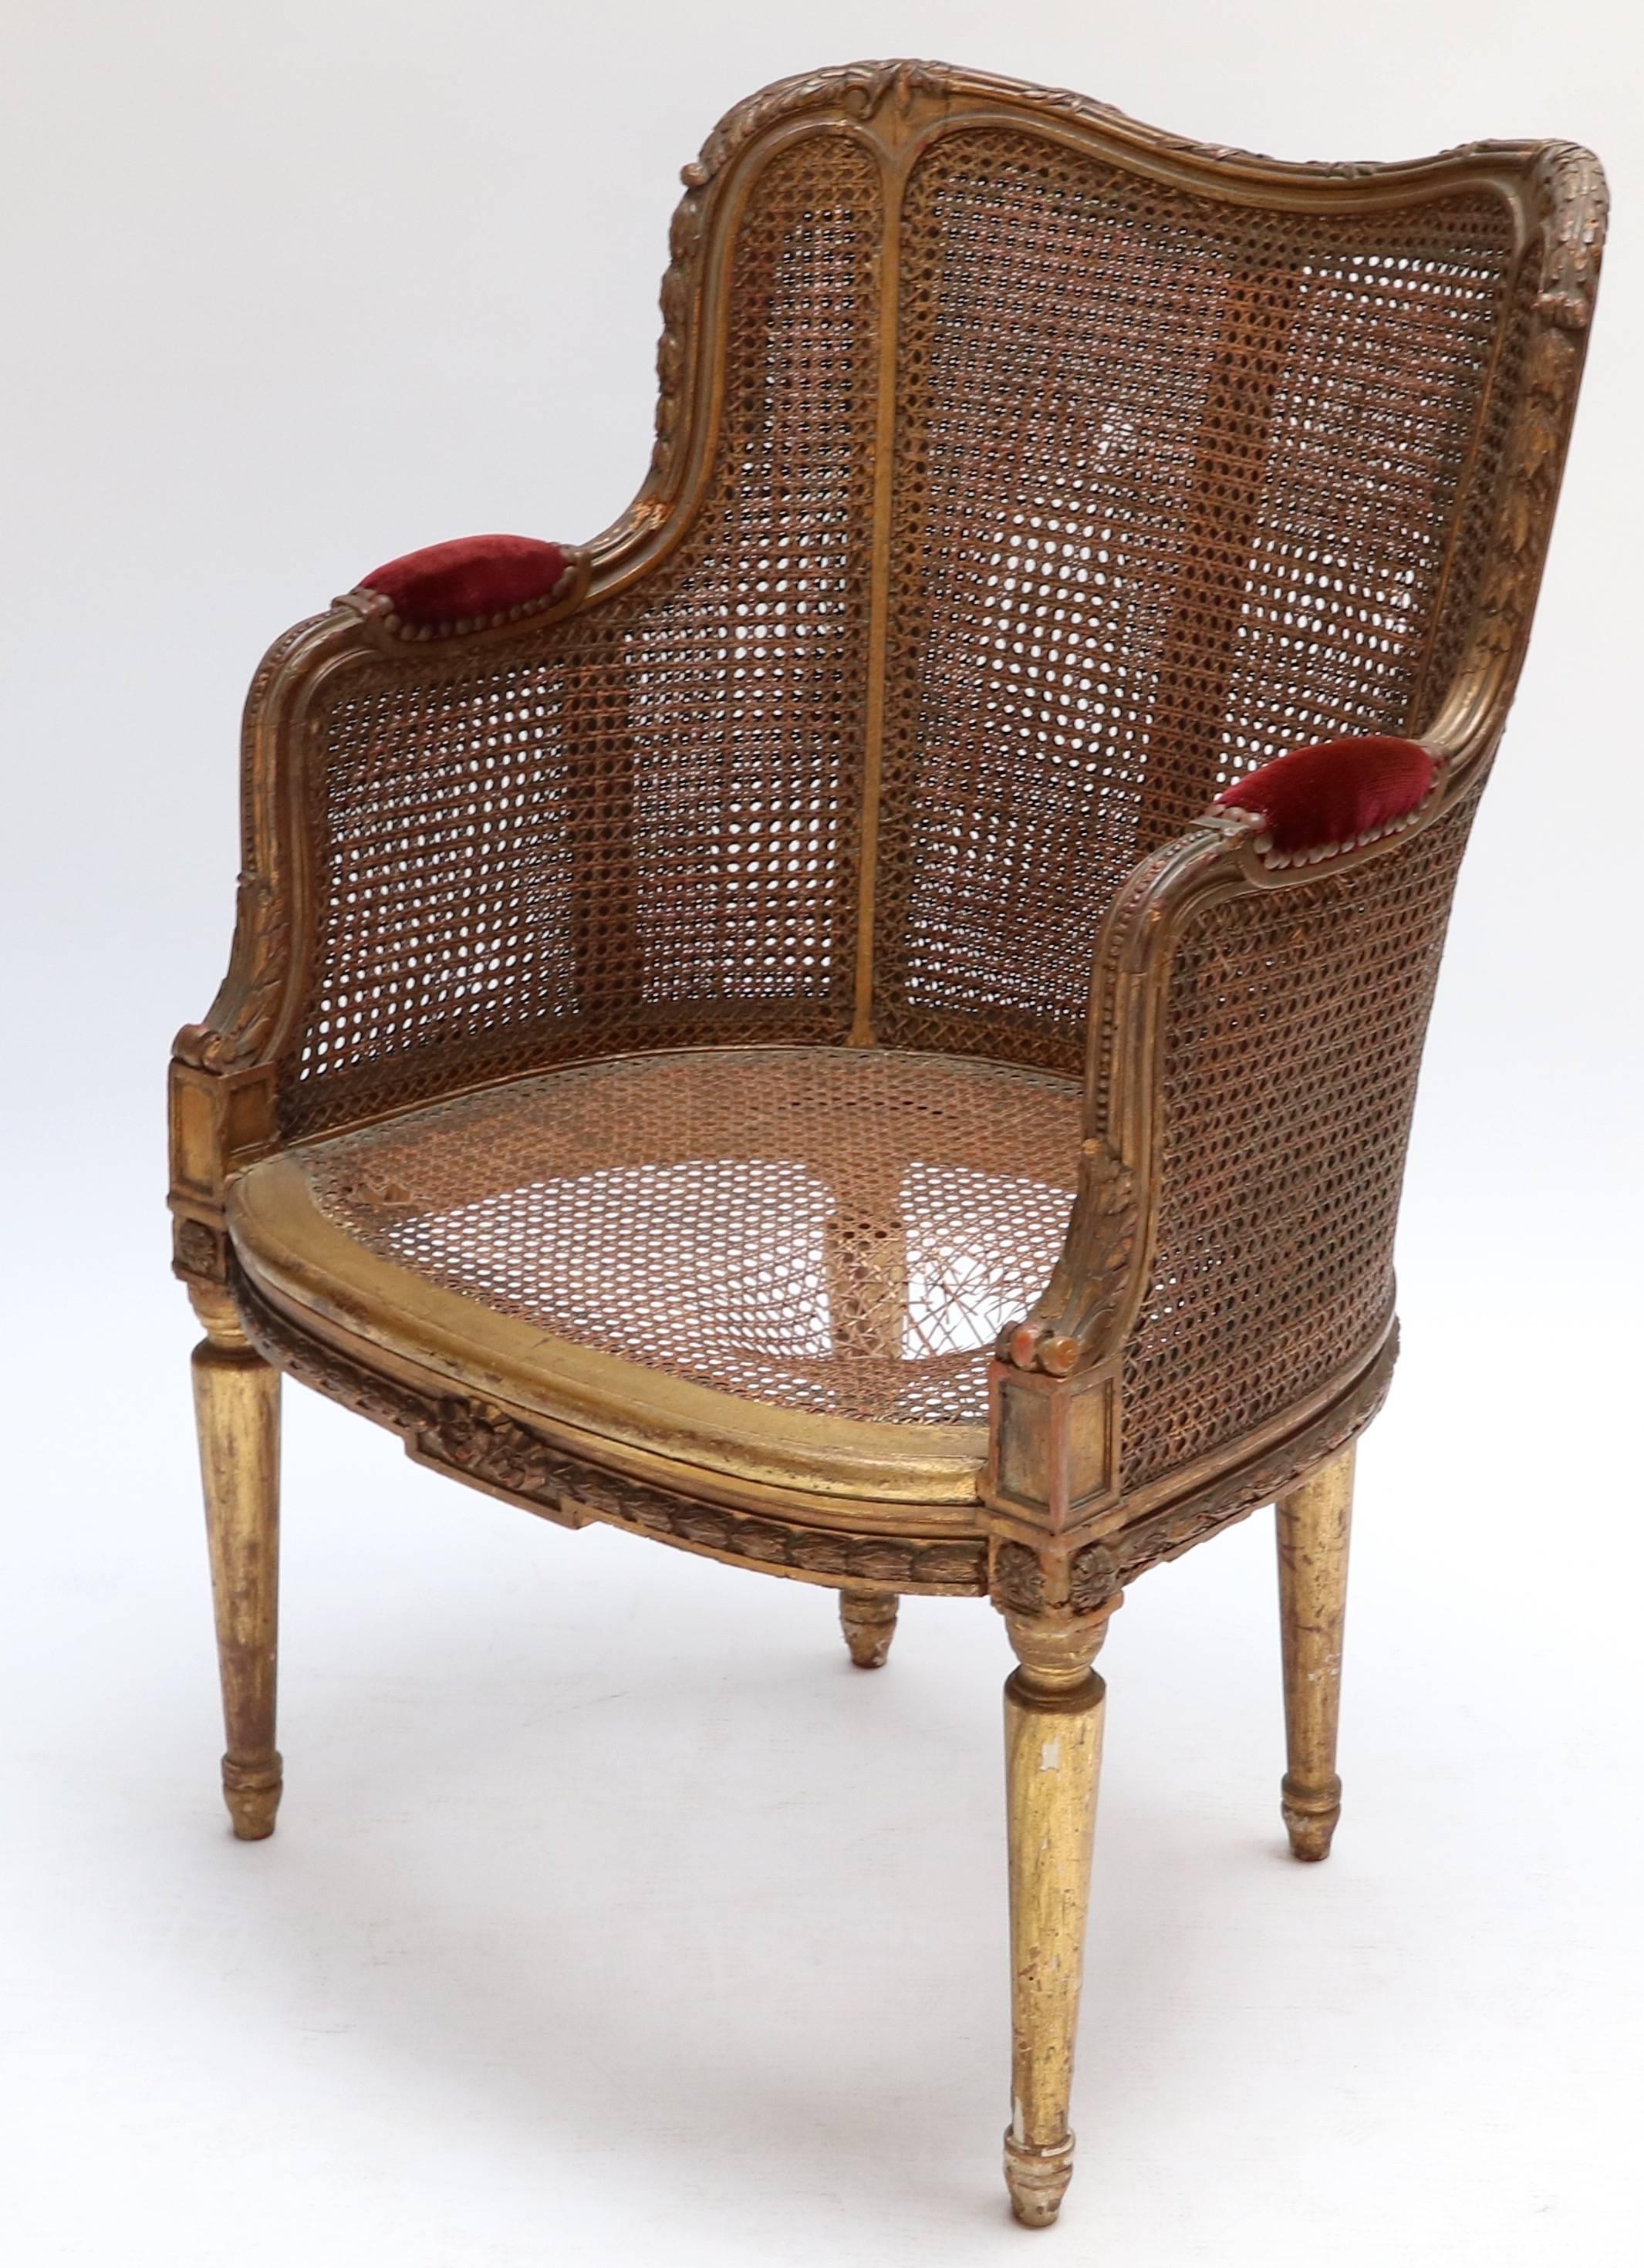 Französischer vergoldeter Doppelstuhl aus dem 19. Jahrhundert mit Armlehnen aus Samt.

